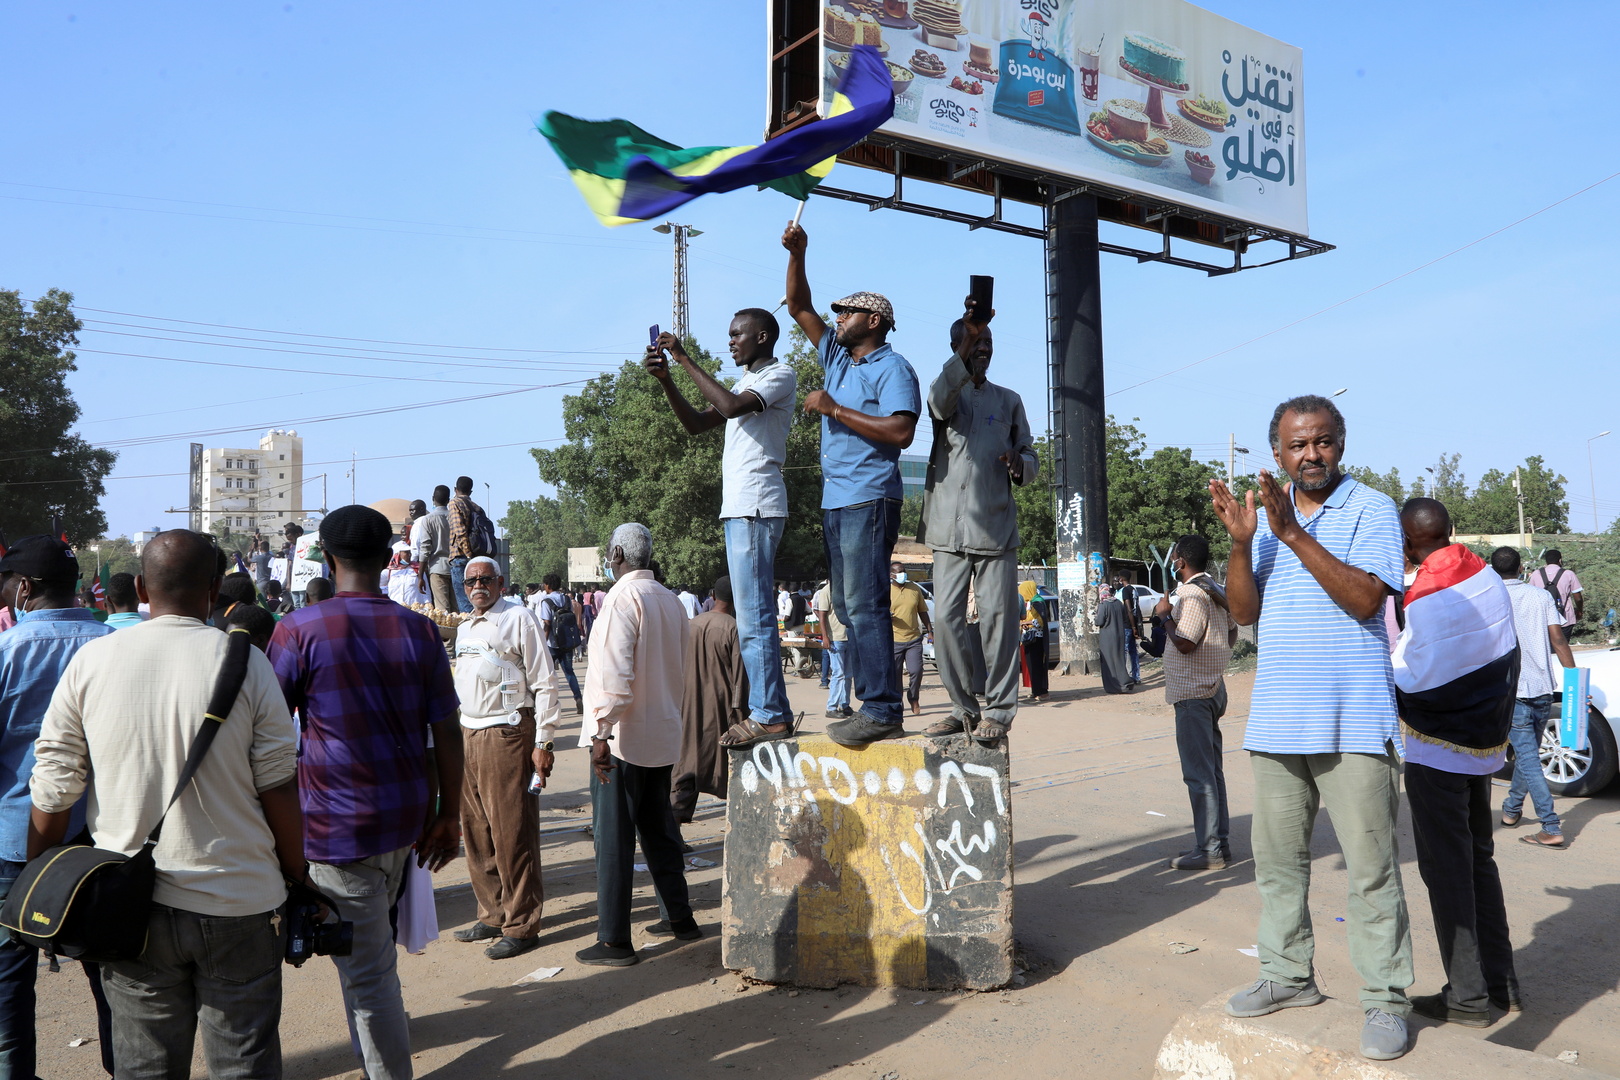 السودان.. استعدادات للنزول إلى الشوارع للاحتجاج ضد العسكريين